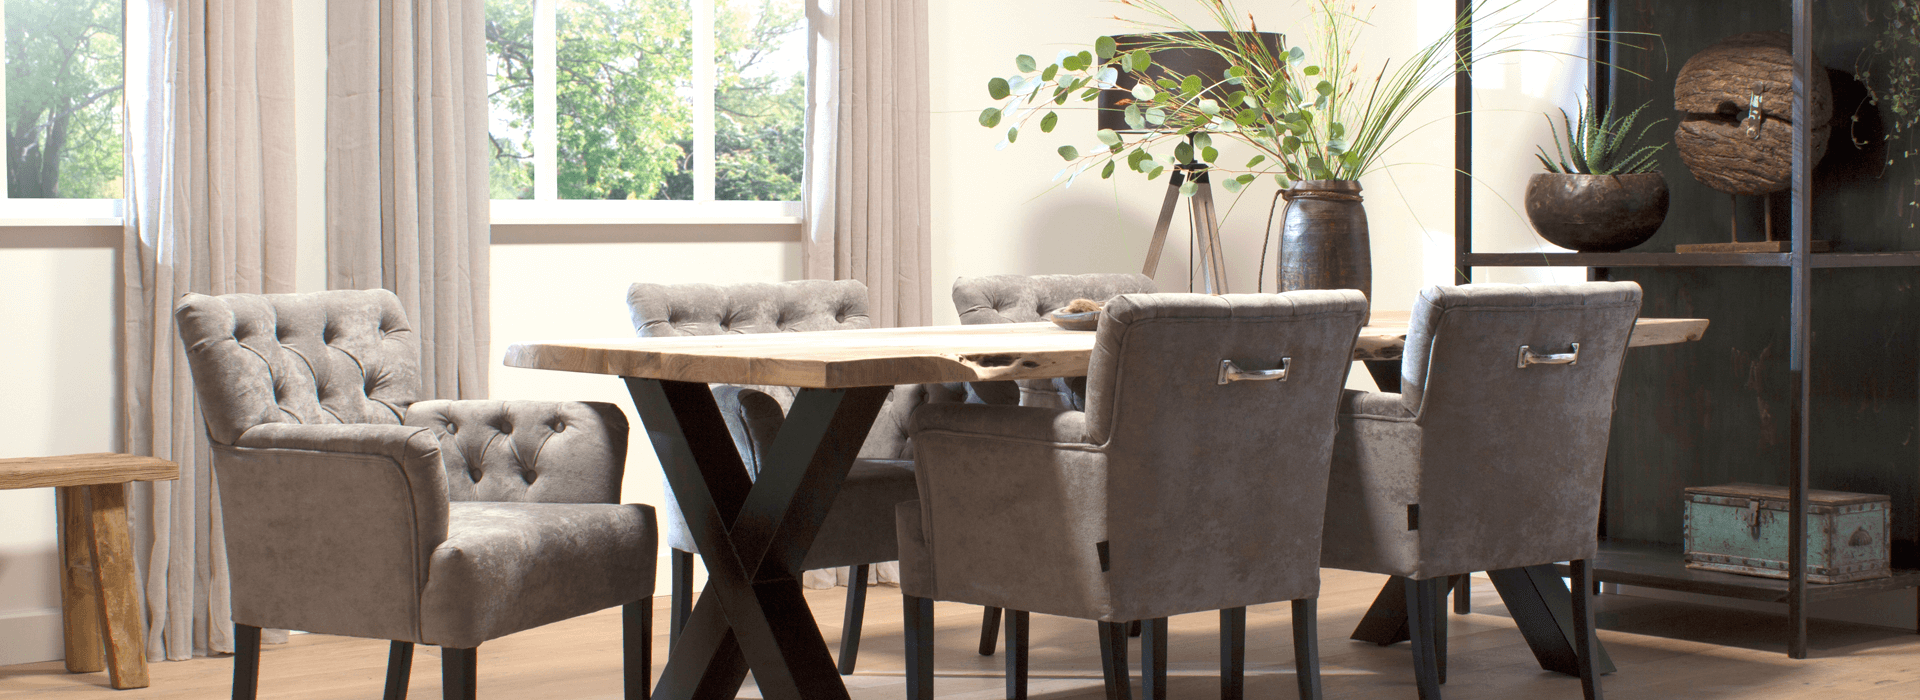 van-den-oever-lekker-wonen-meubelen-tafel-stoel04